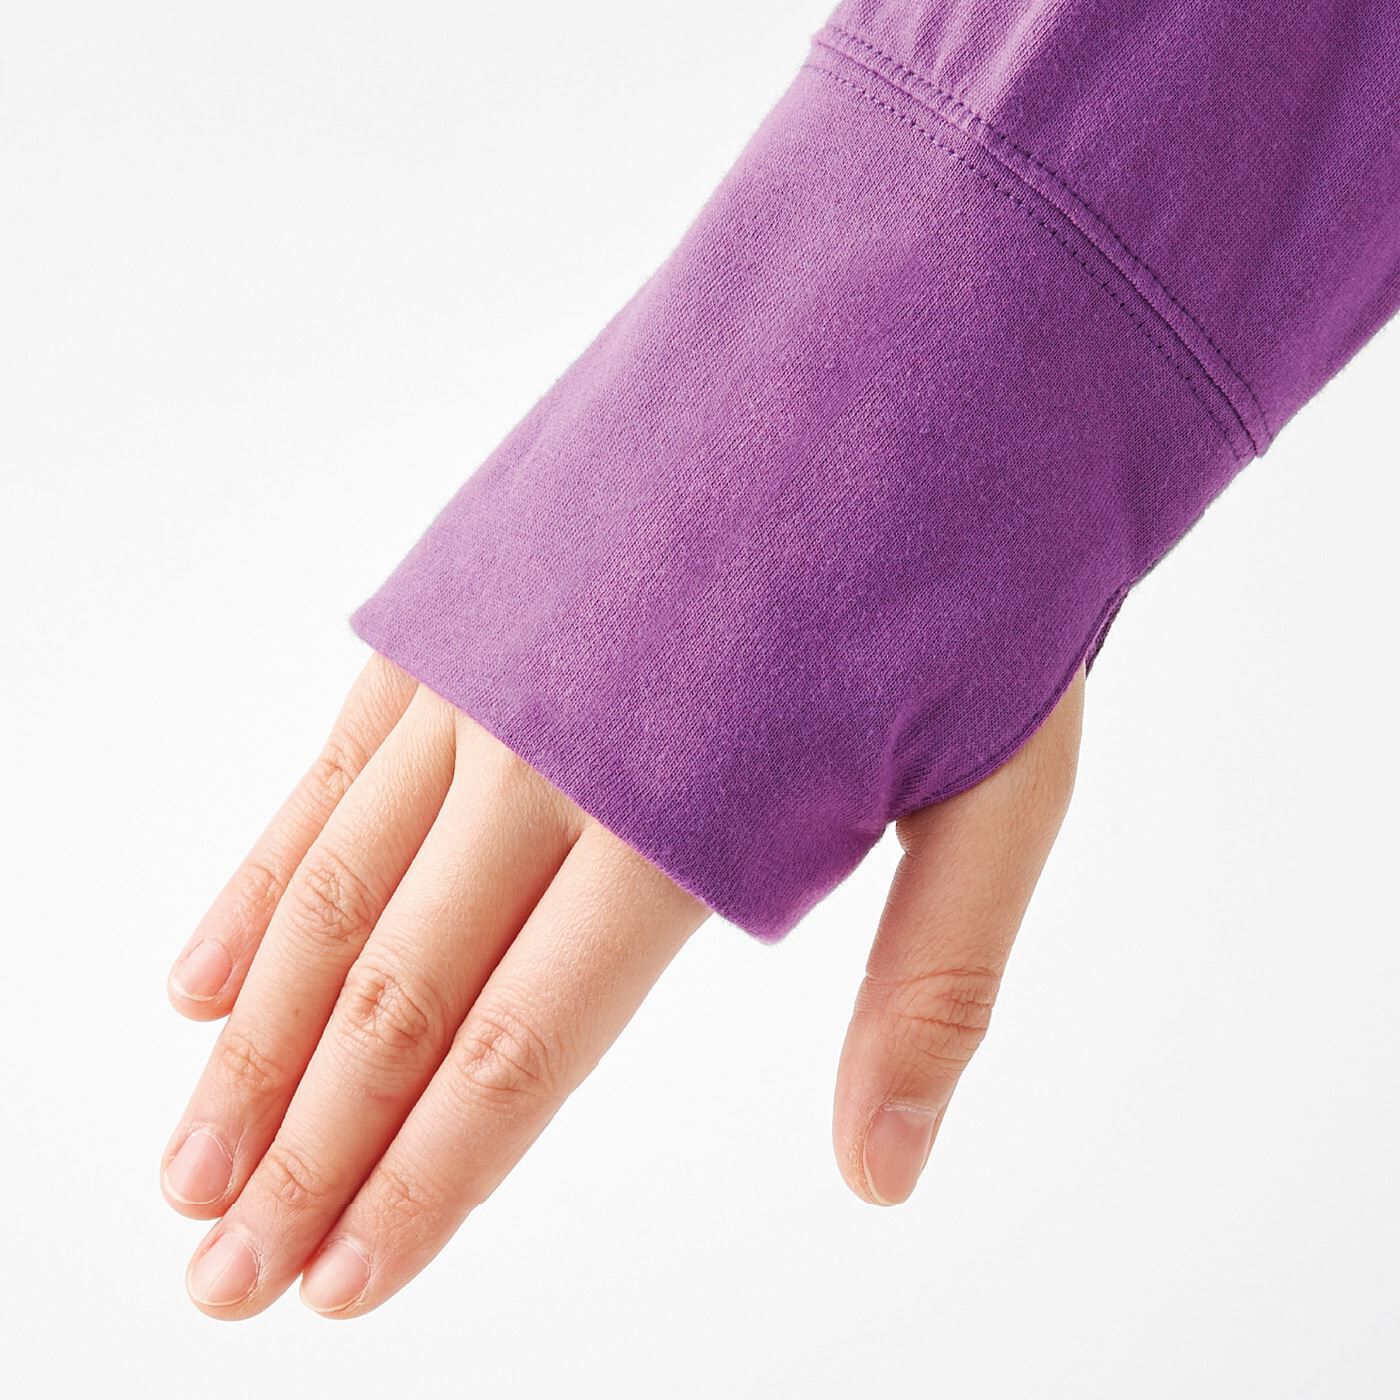 USEDo|薄手カットソー素材のクレイジーパターン吸水速乾＆UVカットパーカー|親指を通せるサムホール付きで、手の甲までしっかりカバー。